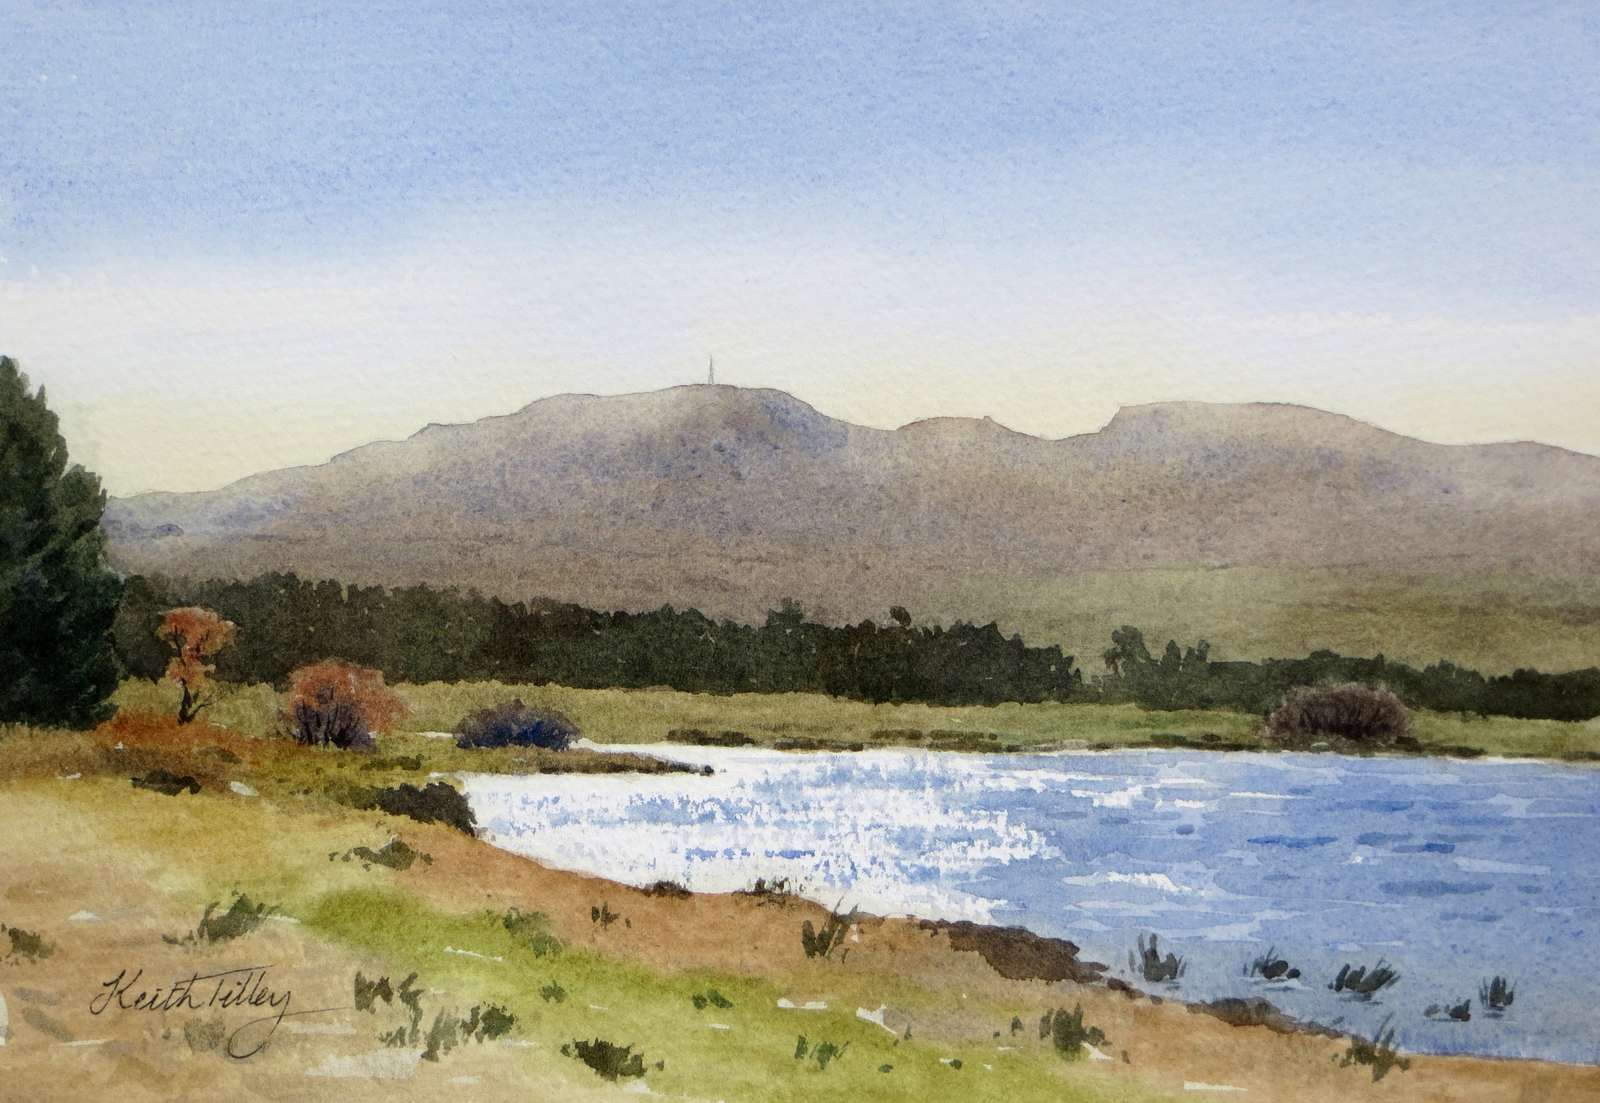 Loch Calder and Ben Dorrery, Caithness. Original watercolour.